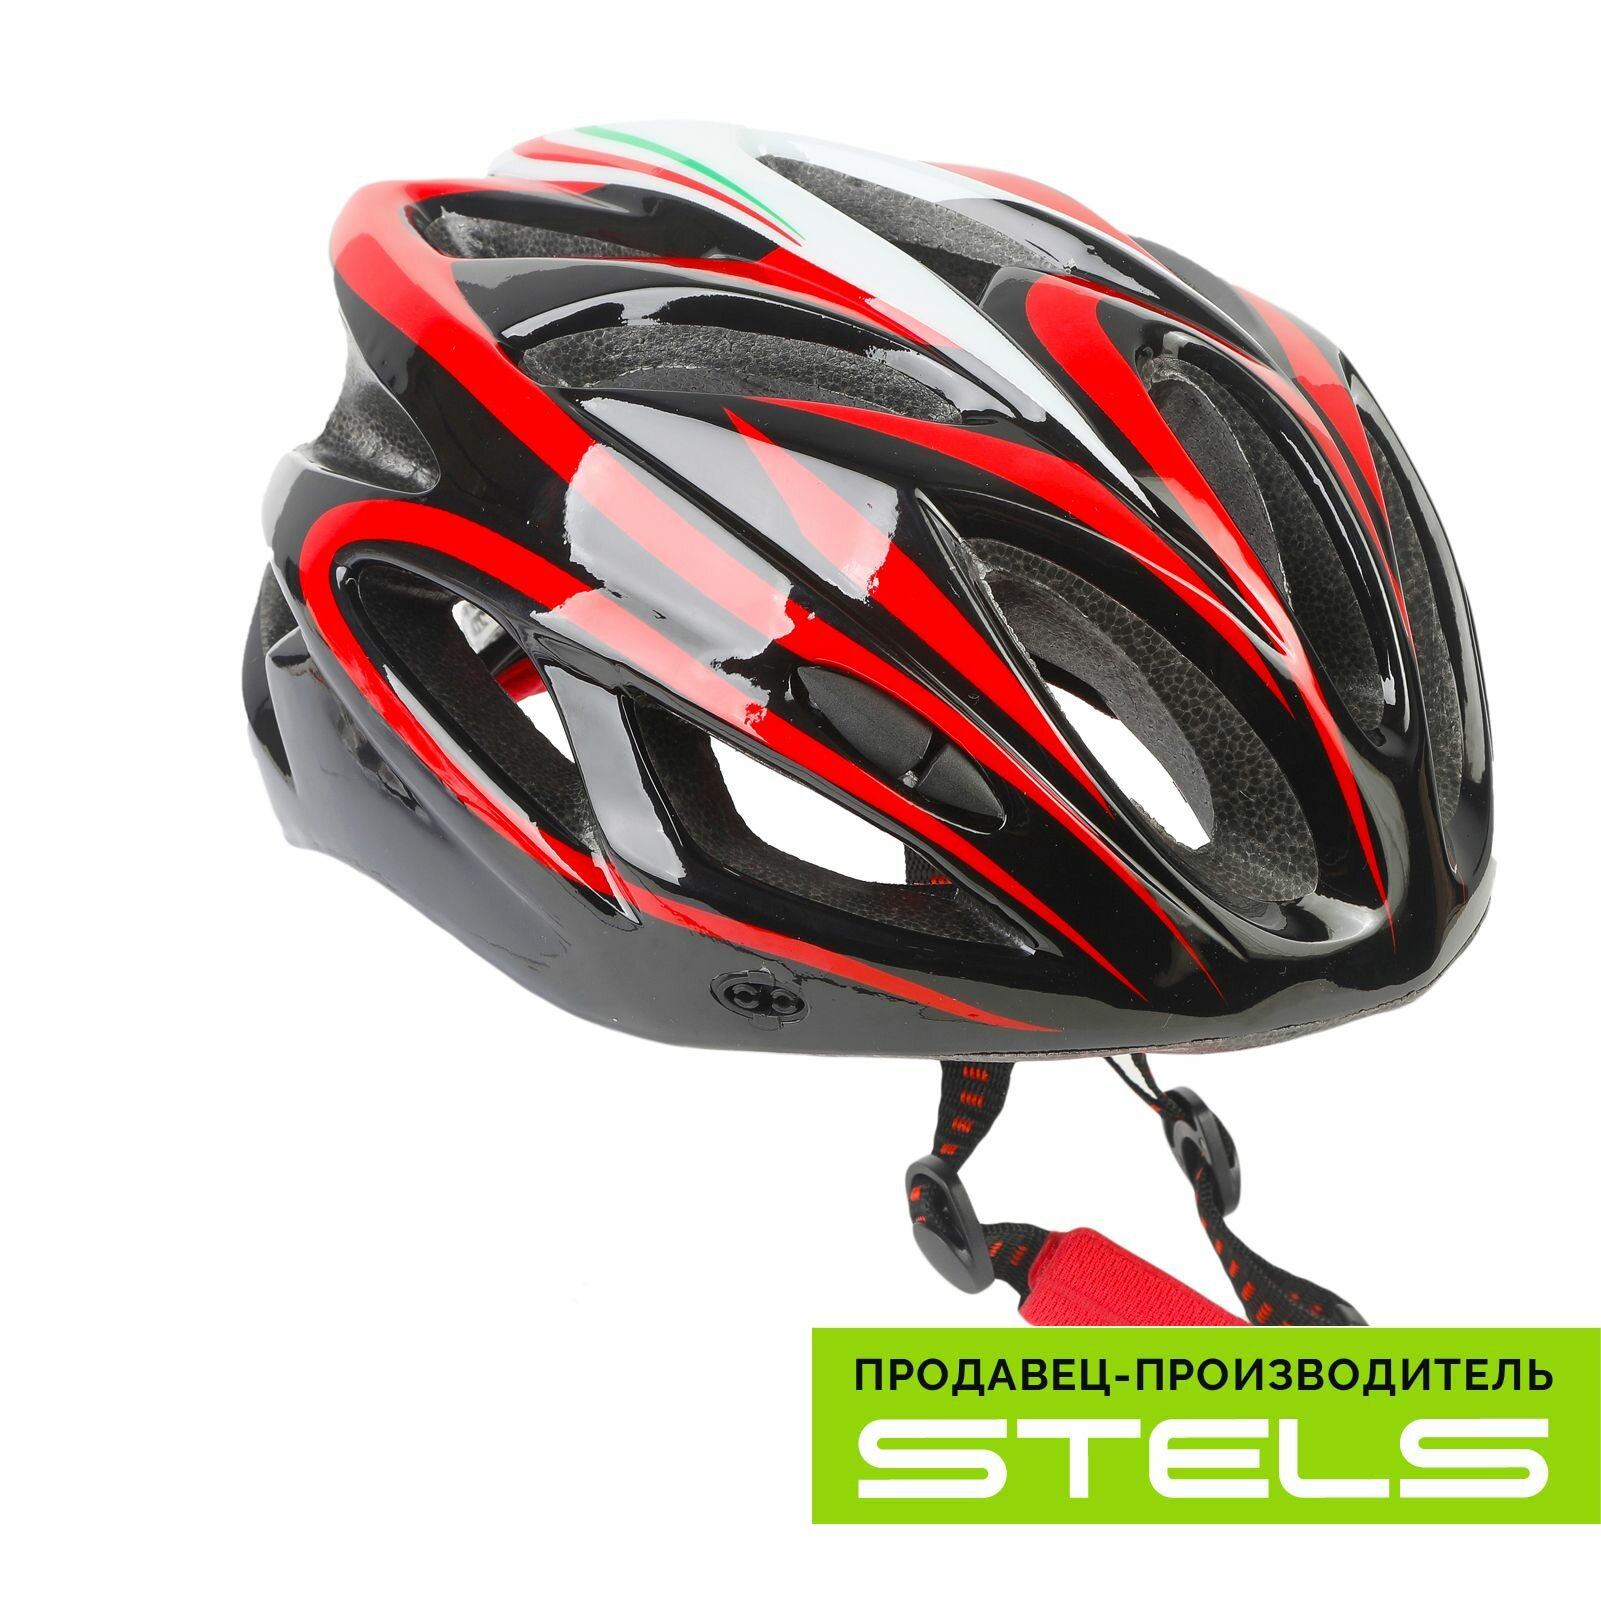 Шлем защитный для катания на велосипеде FSD-HL022 (in-mold) чёрно-красный, размер L NEW